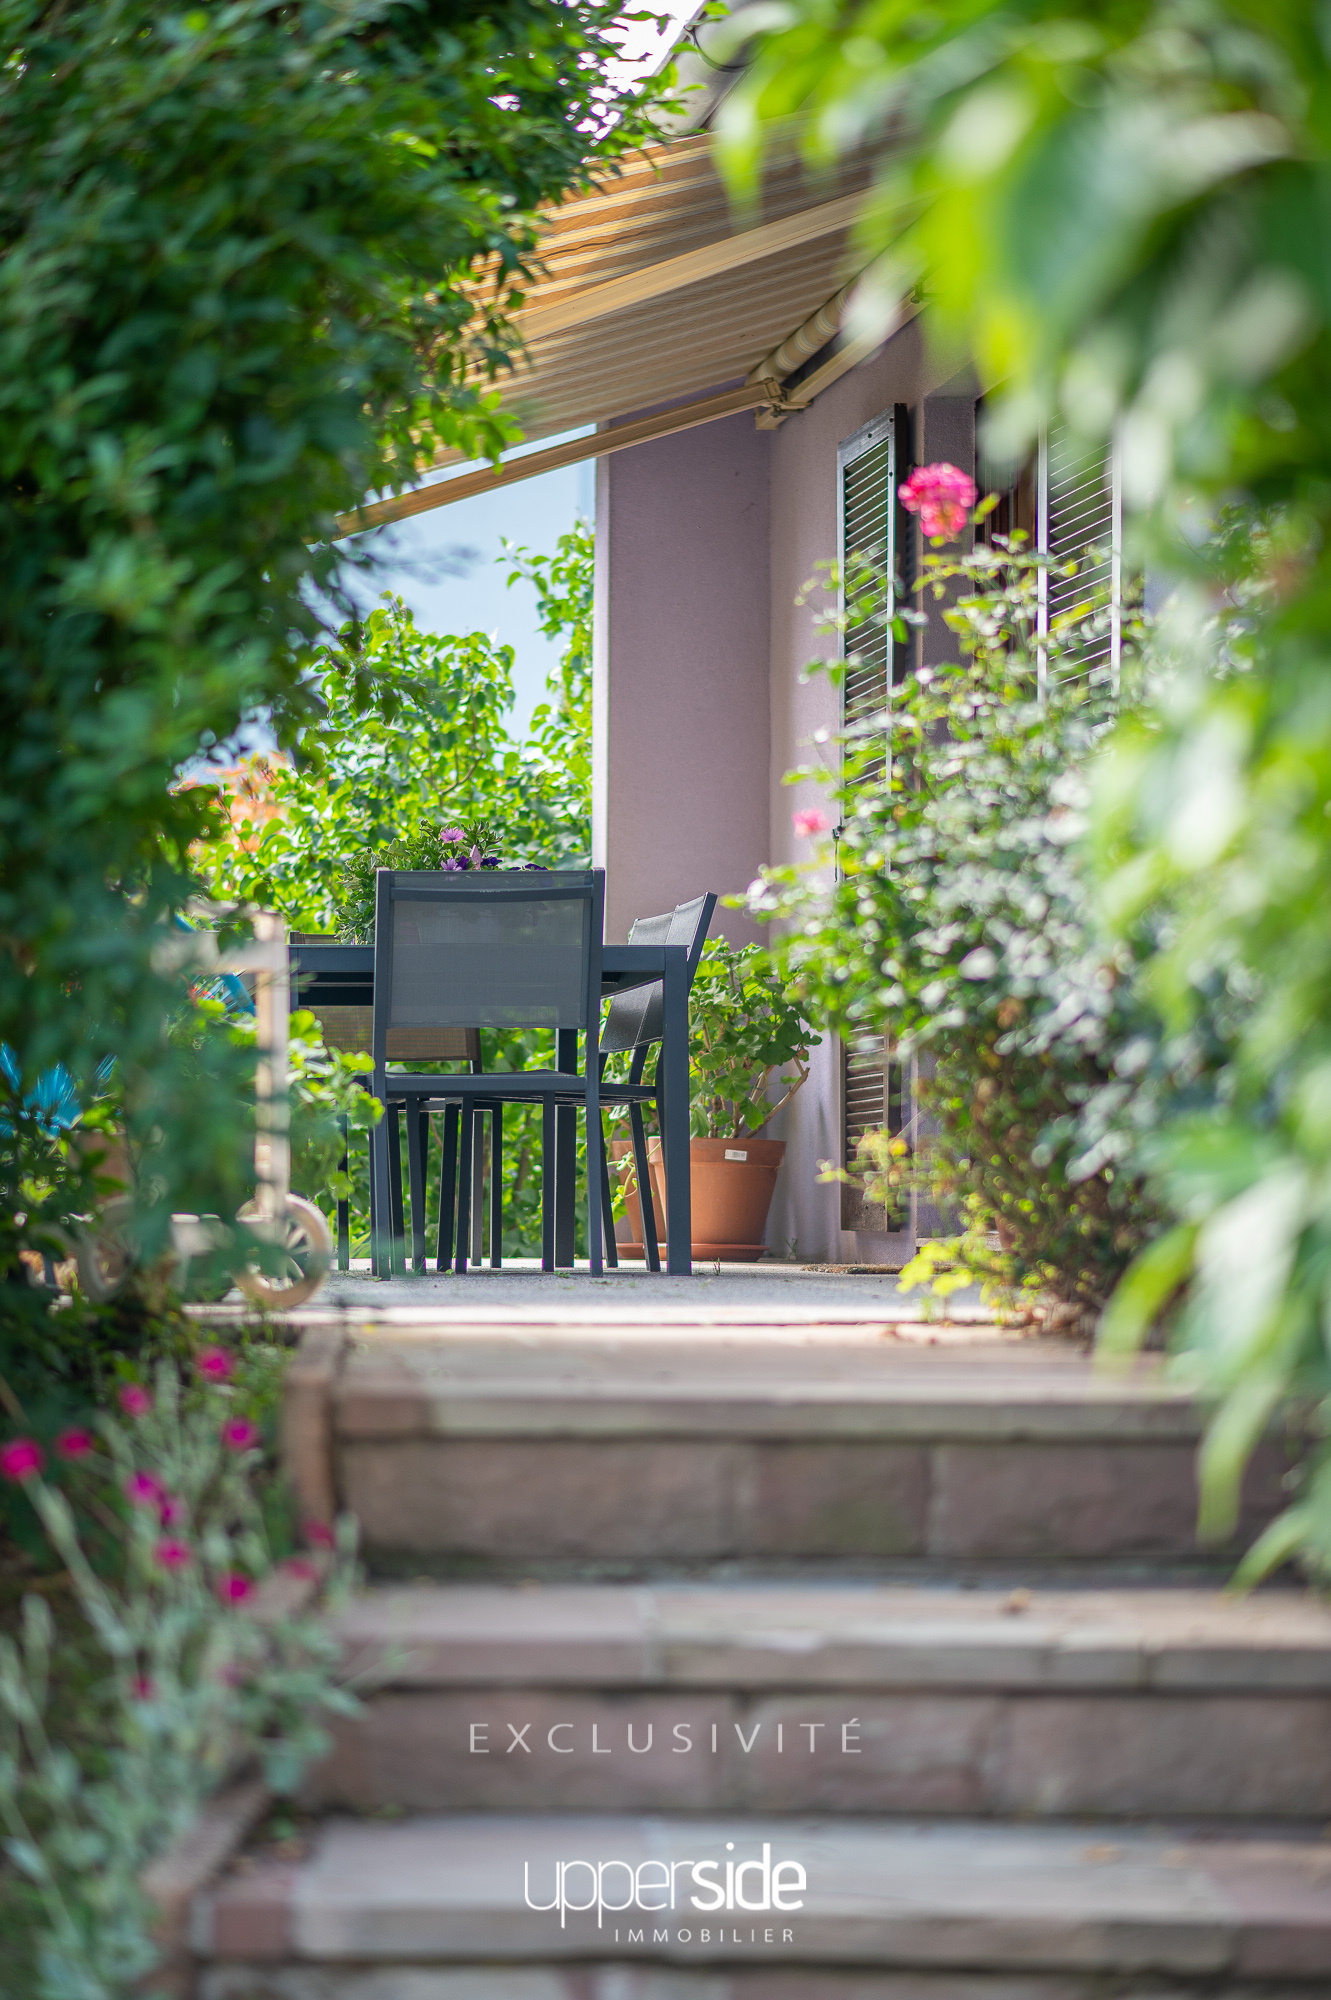 ZEBRA – Une maison 6 pièces au calme avec jardin piscinable Image